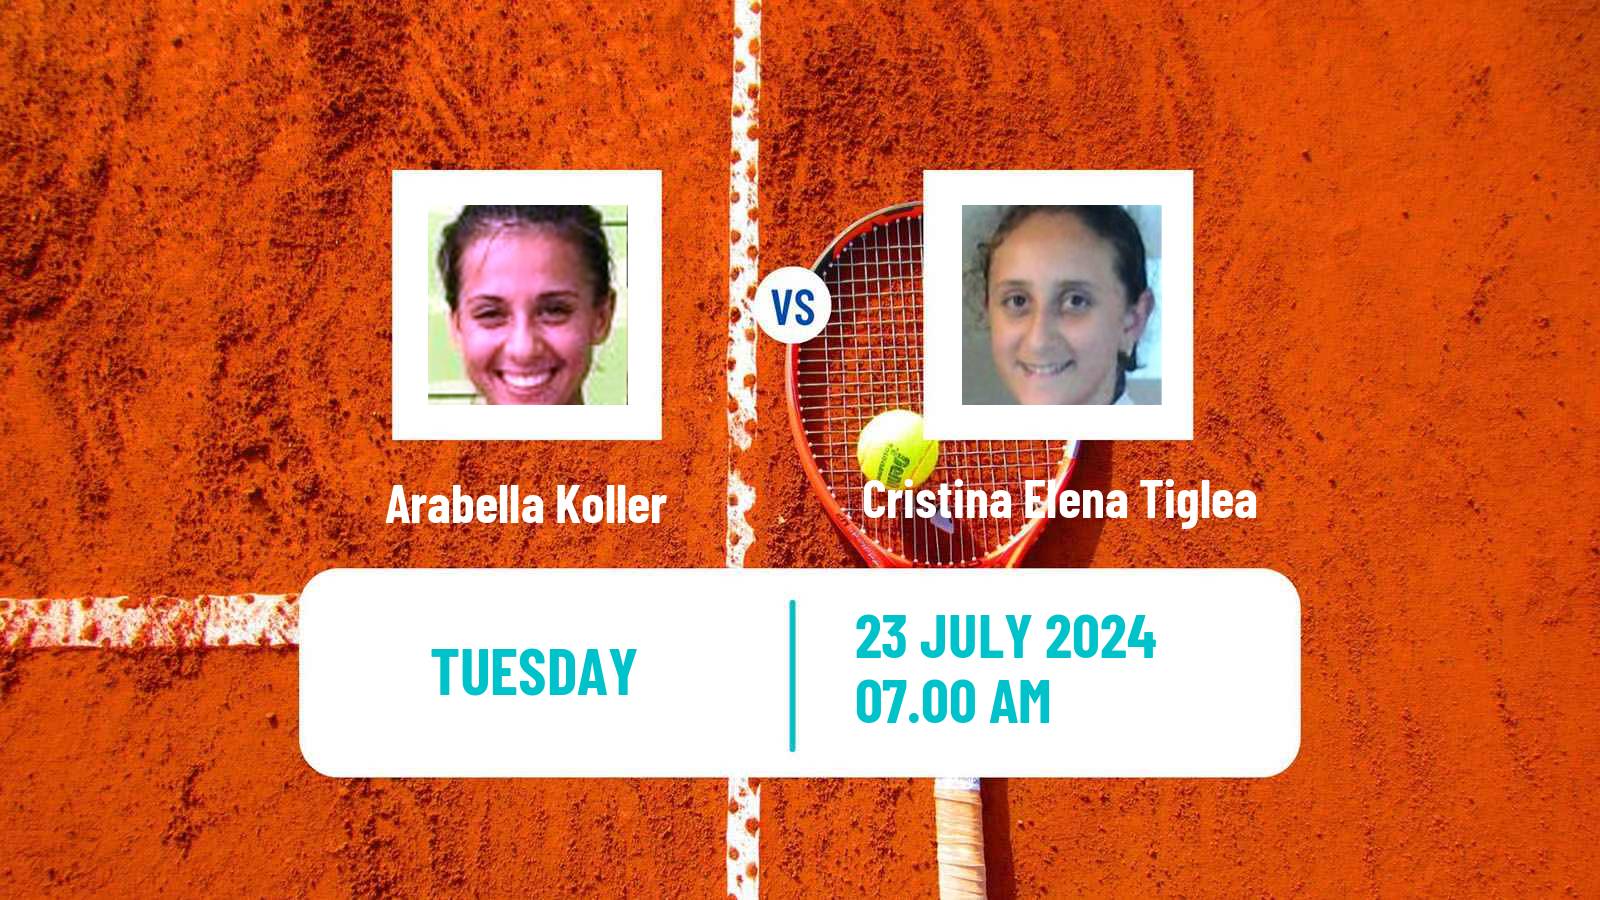 Tennis ITF W15 Monastir 51 Women Arabella Koller - Cristina Elena Tiglea